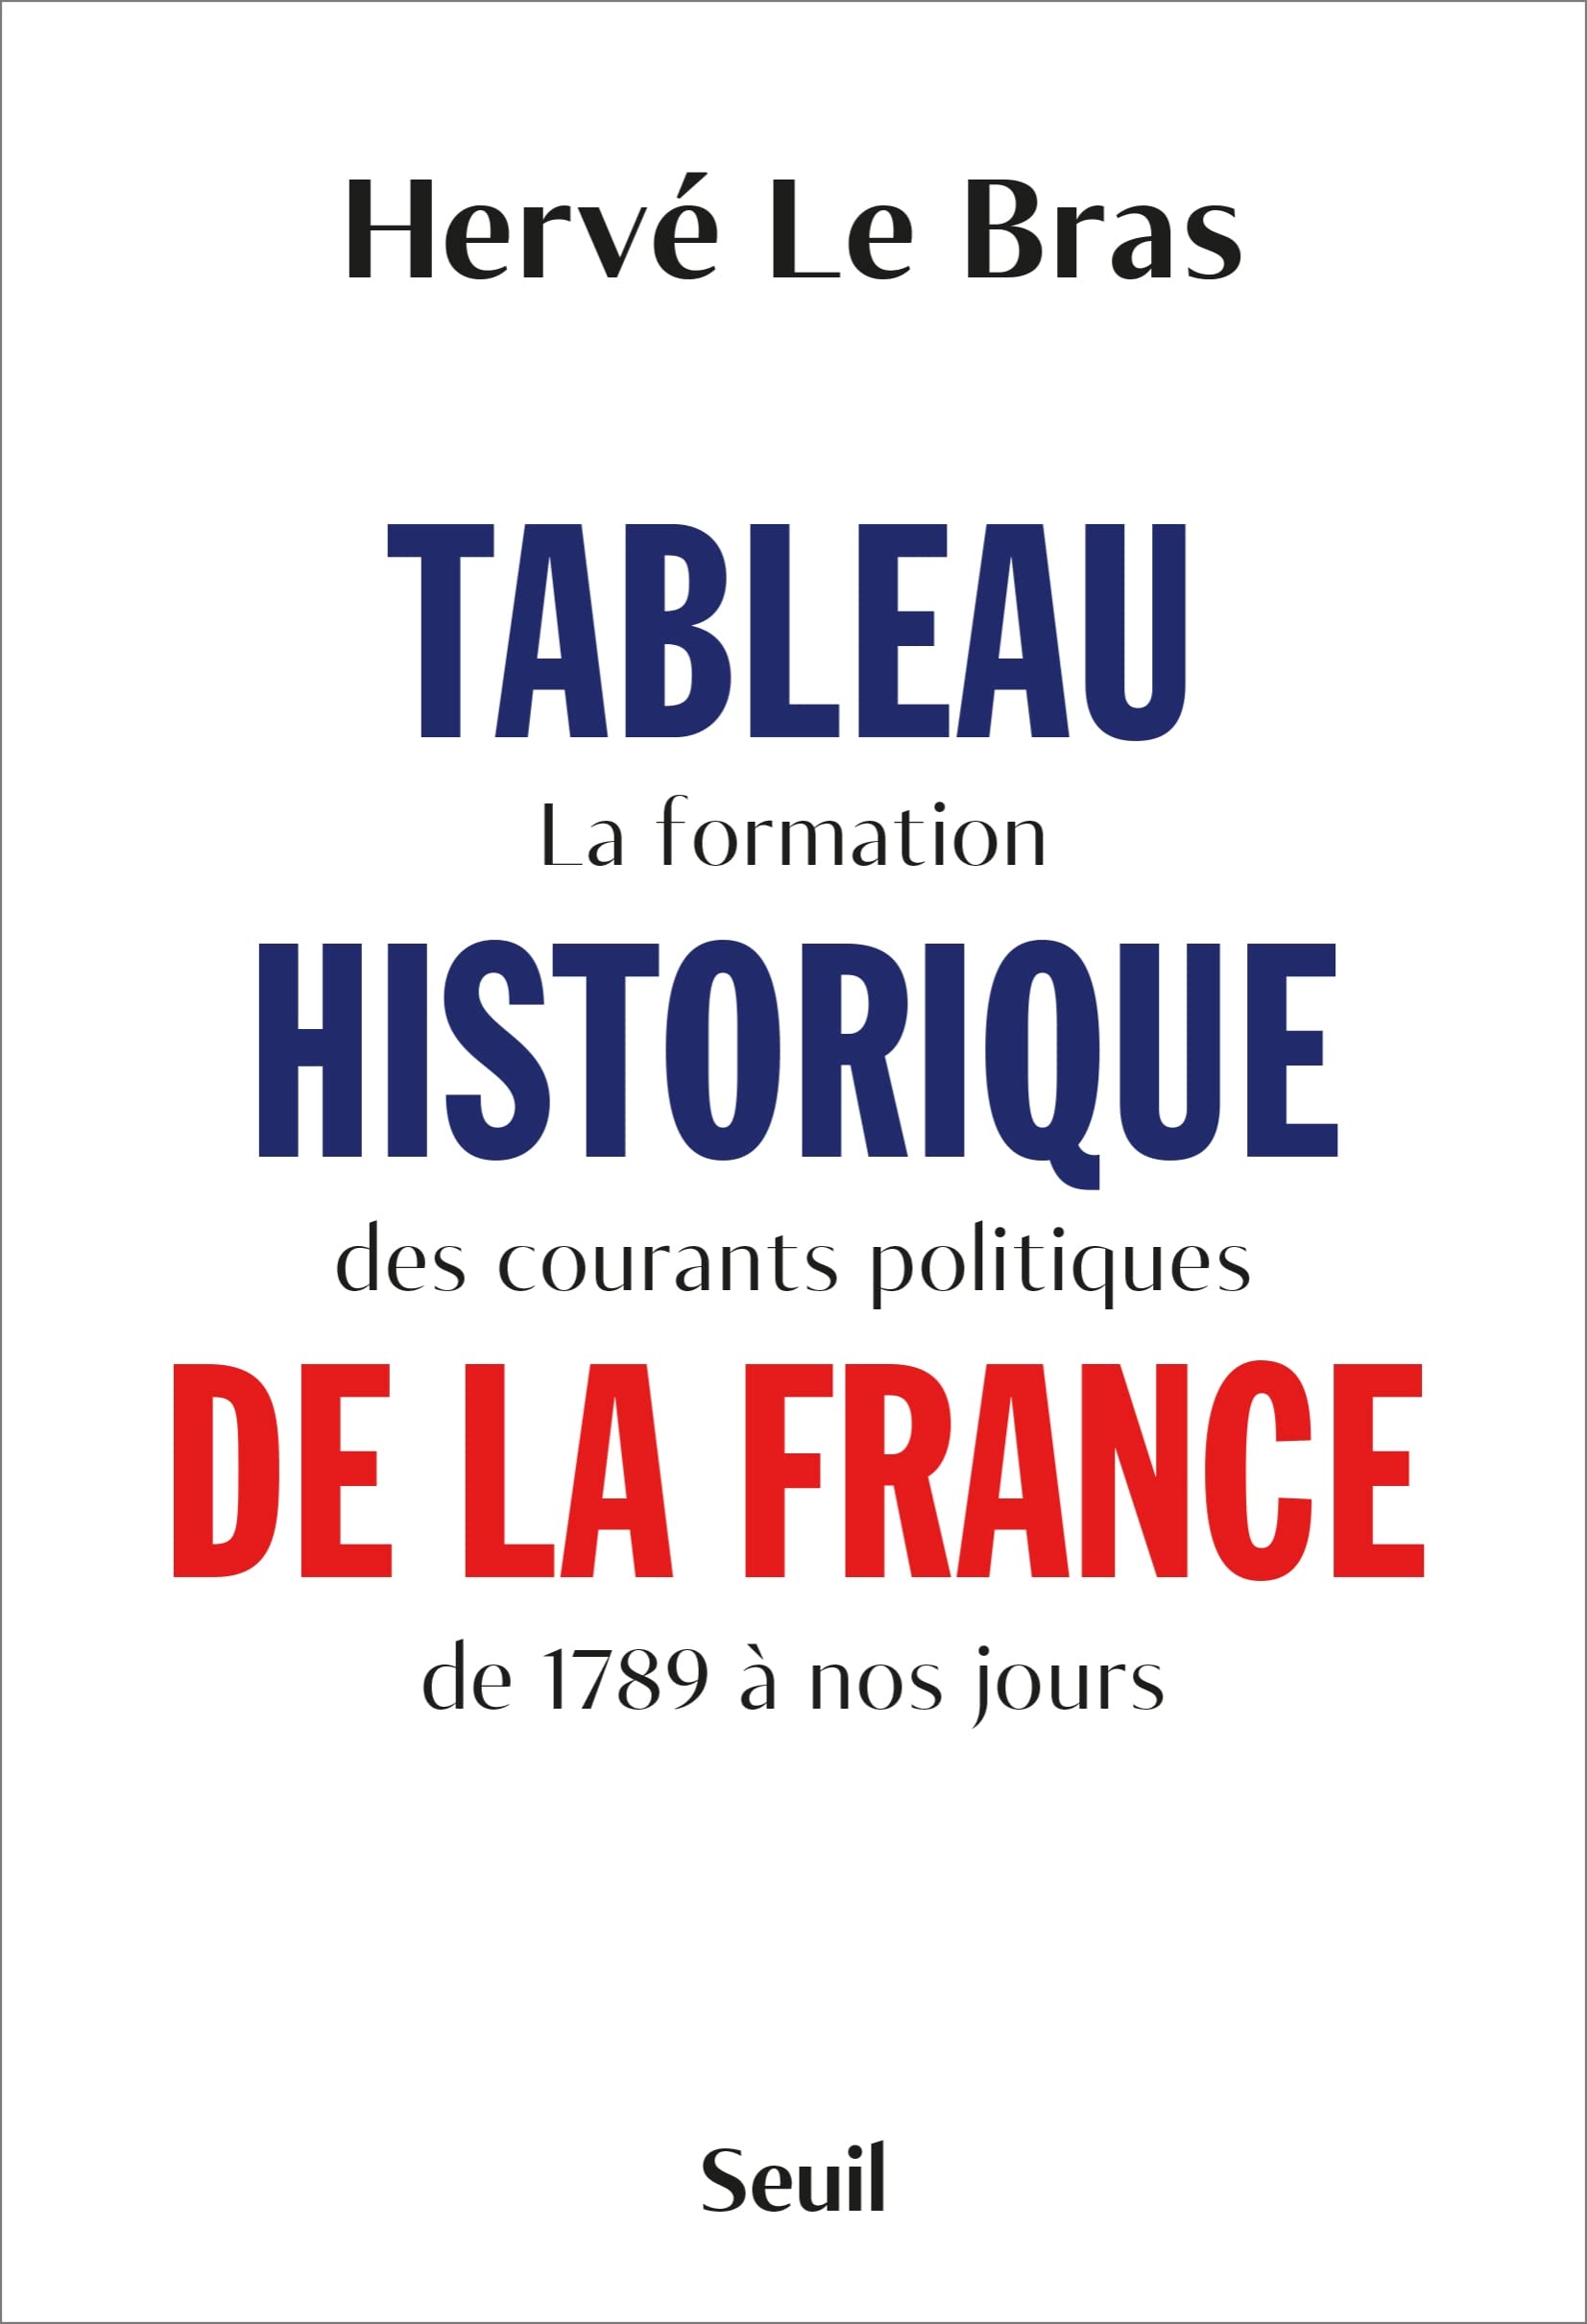 Tableau historique de la France (French language, 2022, Éditions du Seuil)